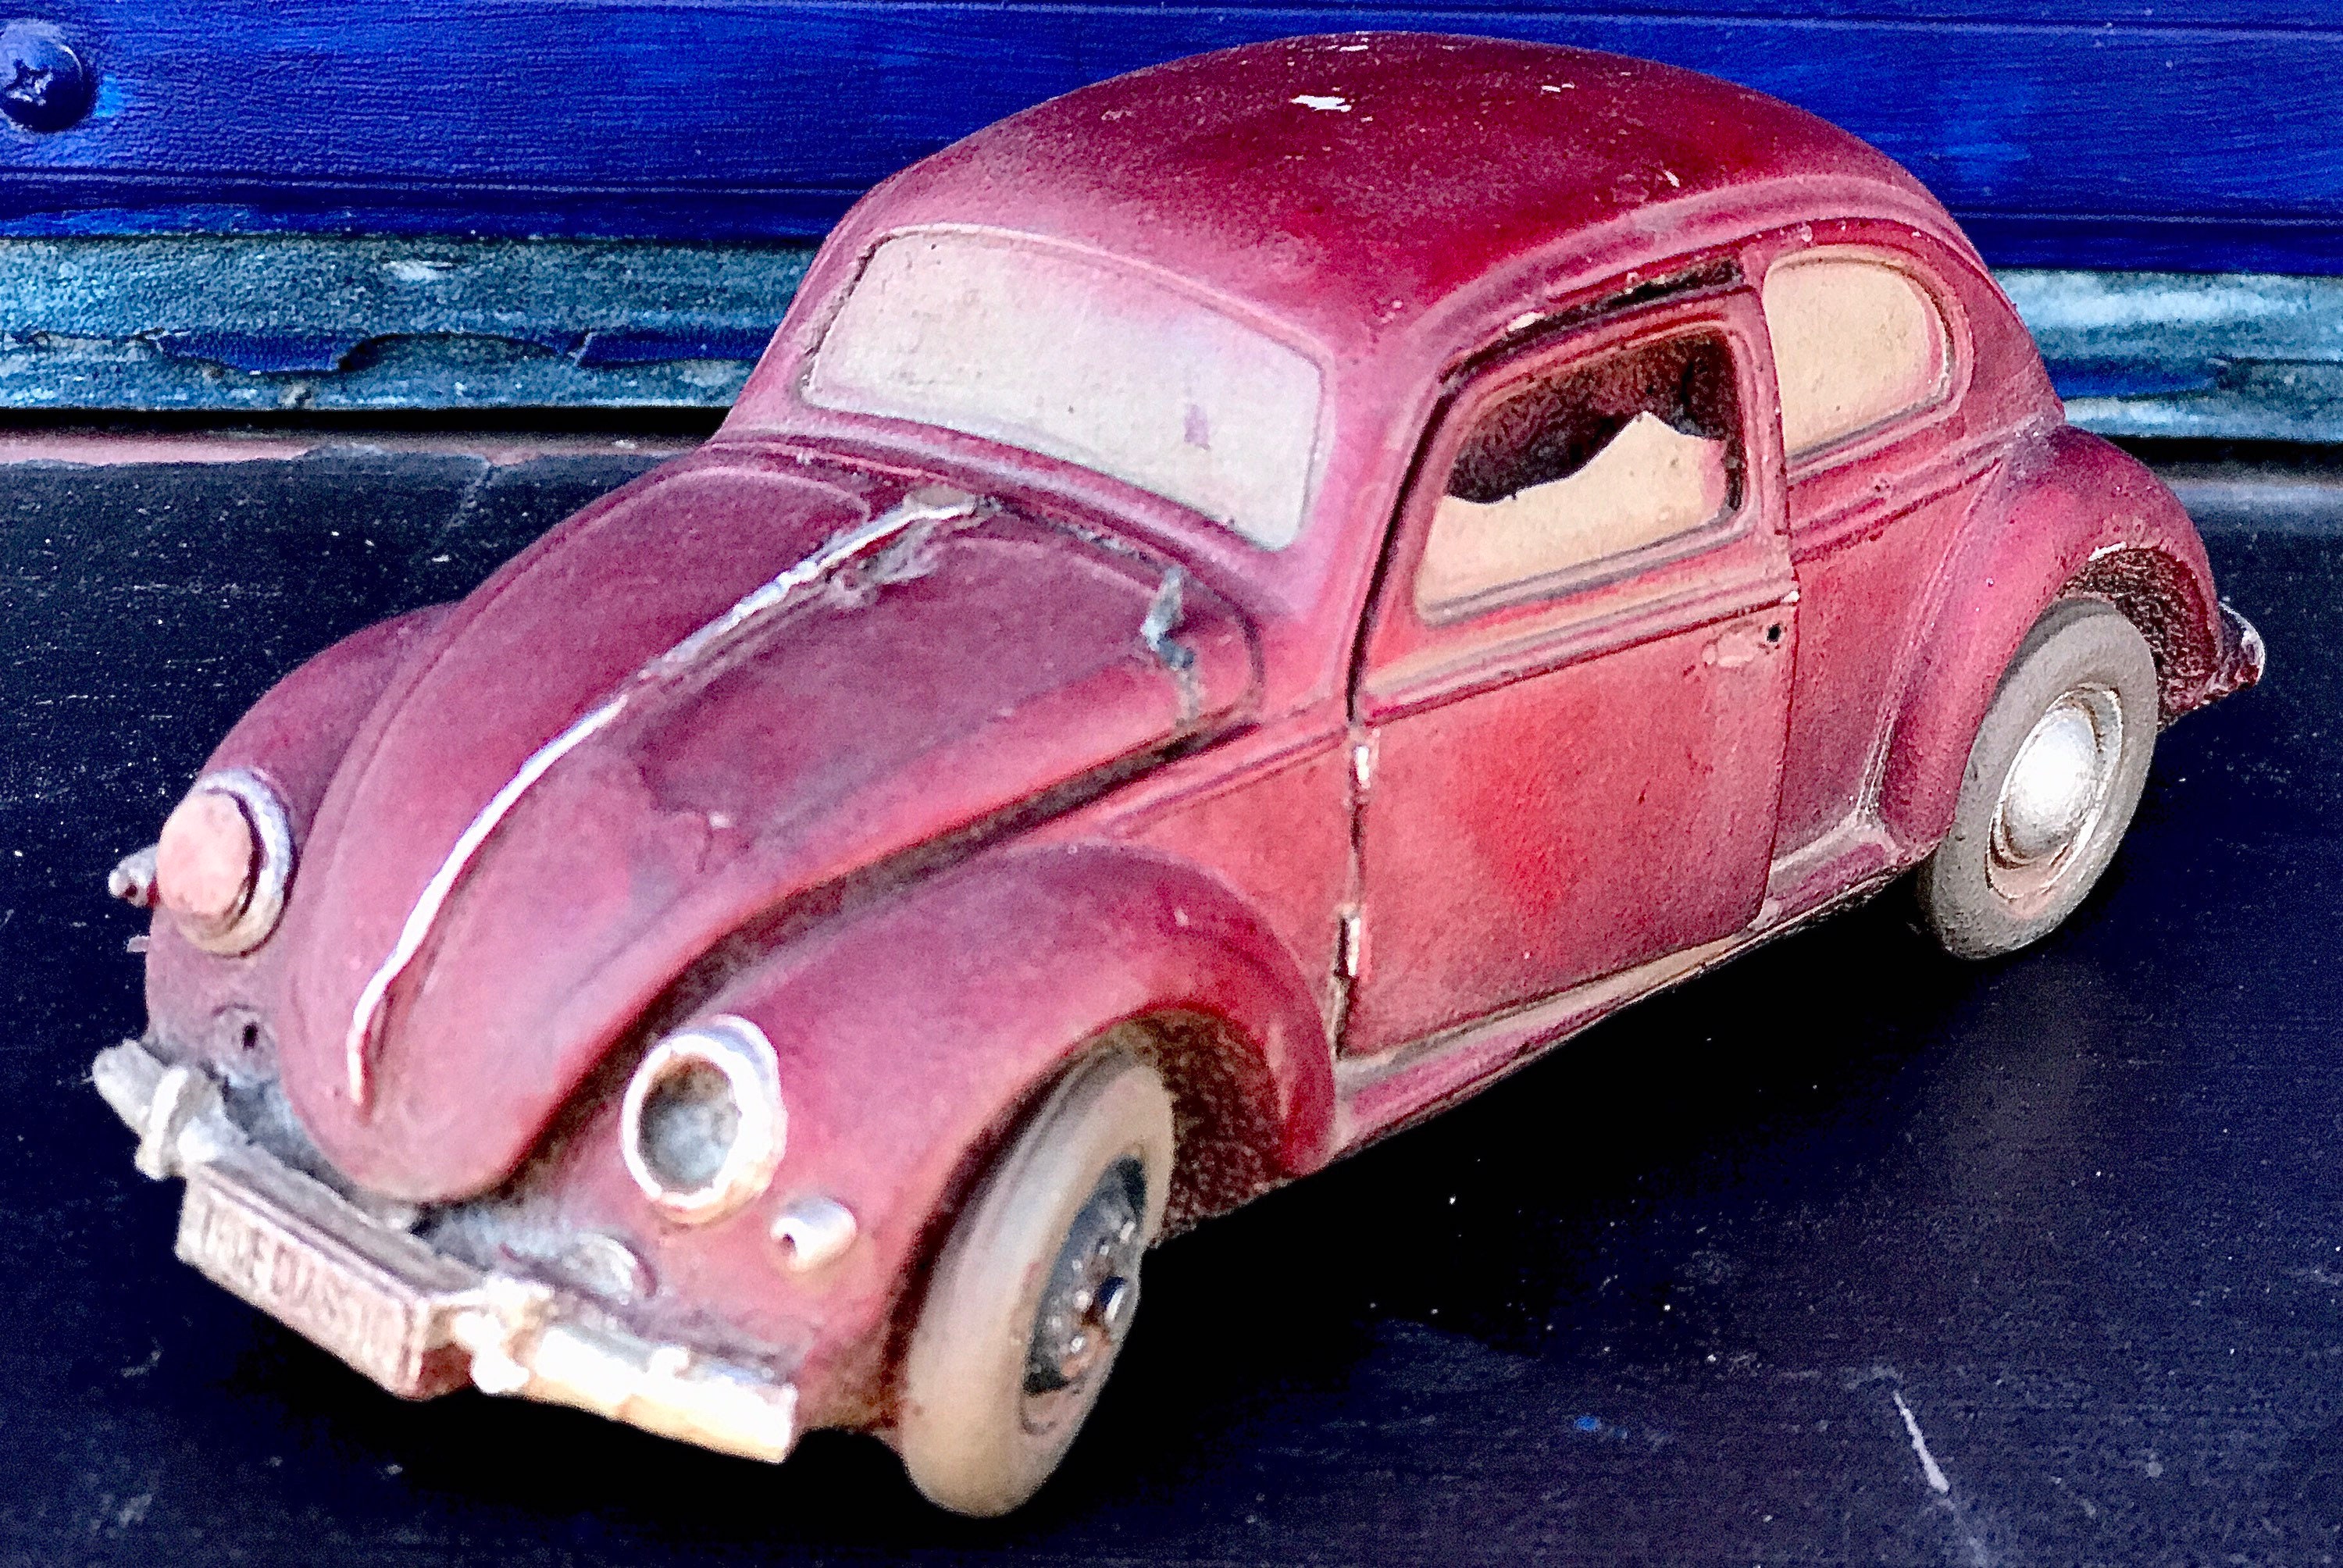 Hot Wheels Psycho-Delic Volkswagen Beetle Diecast Car 